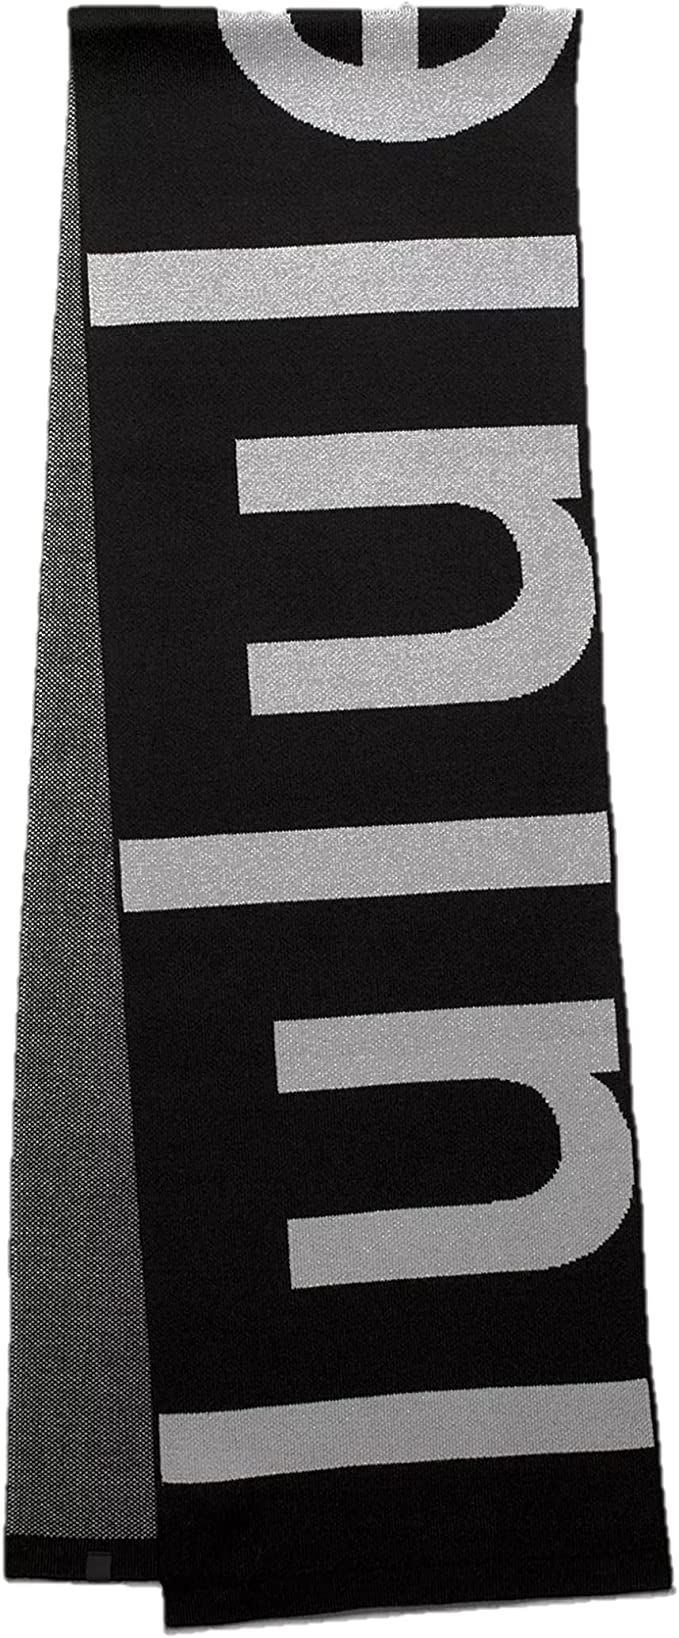 Lululemon Athletica Unisex Wool-Blend Knit Logo Scarf (Black/Rhino Grey) One Size | Amazon (US)